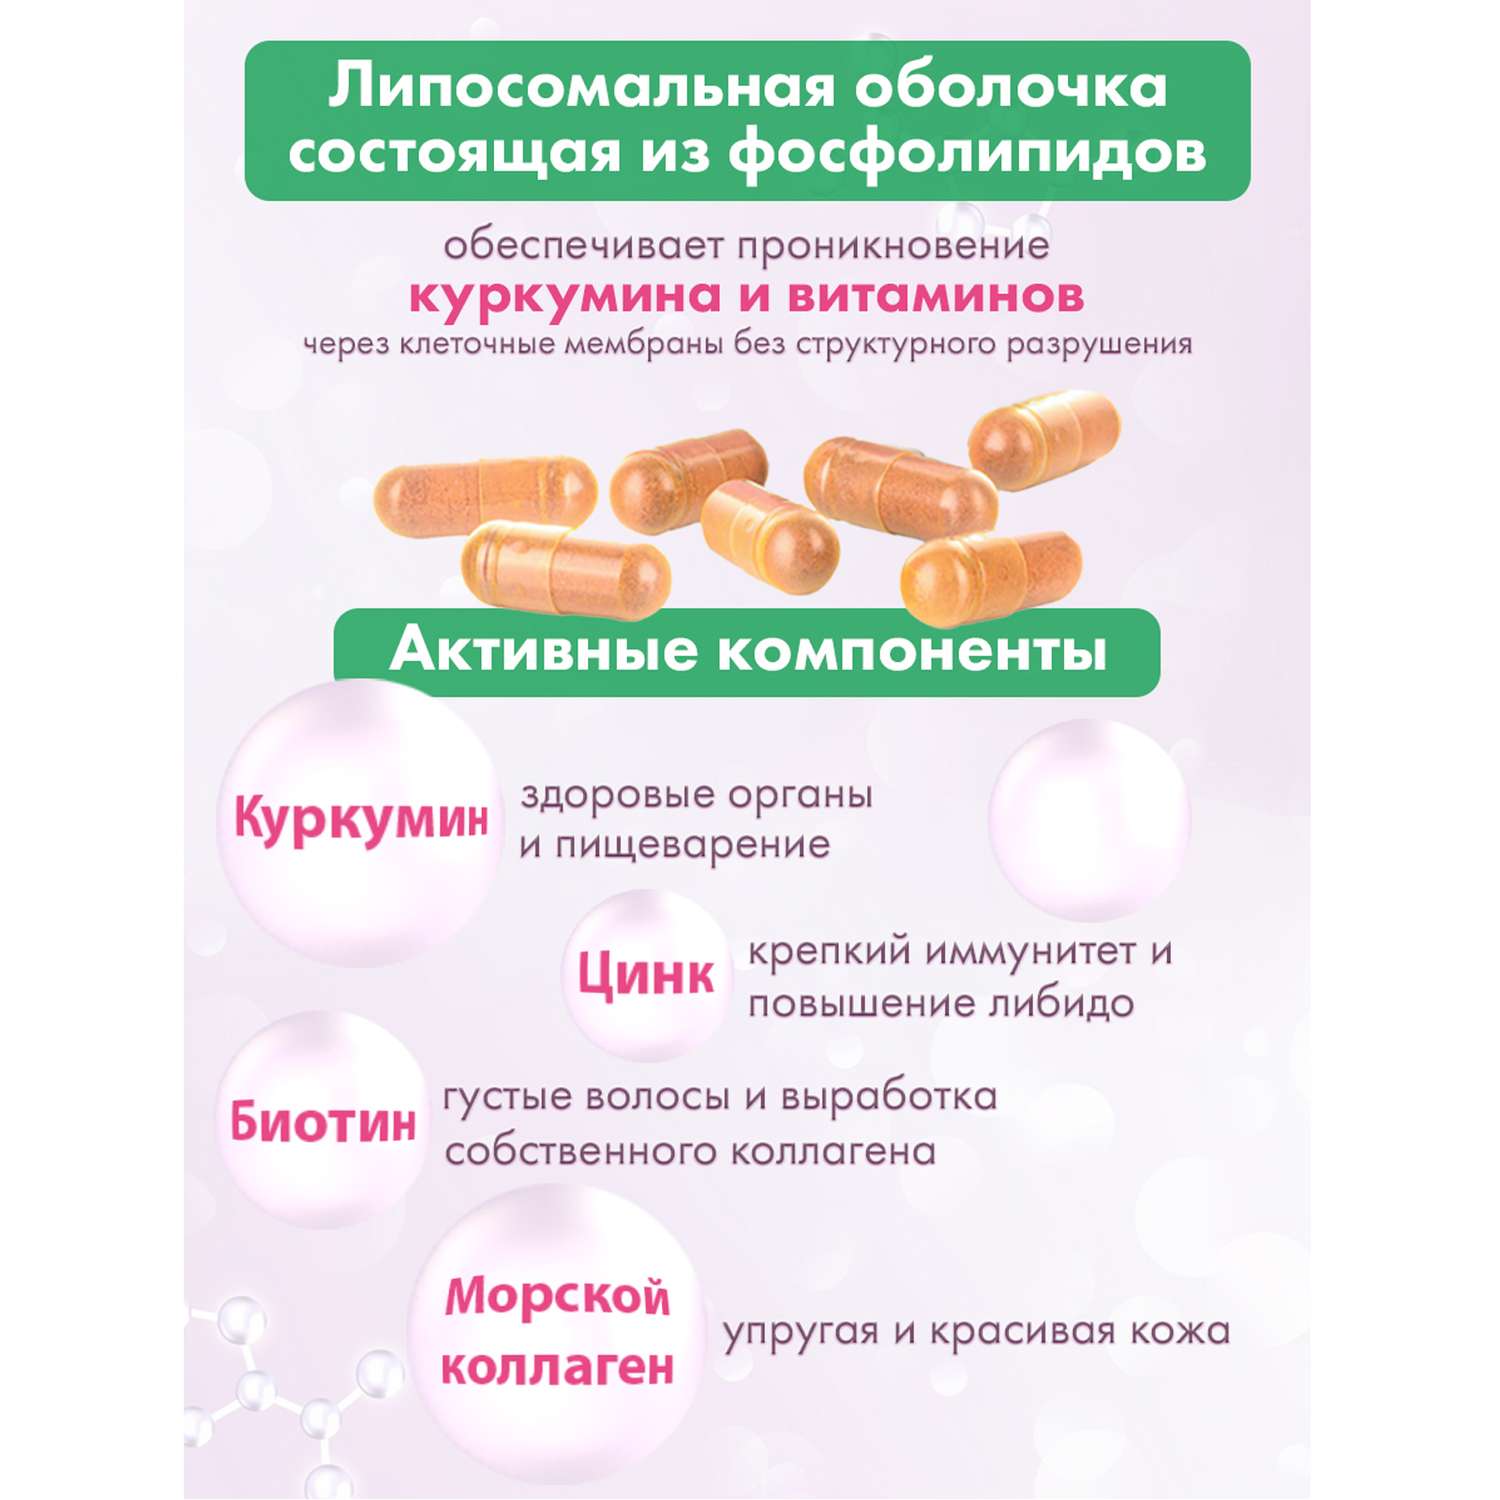 Концетраты пищевые Алтайские традиции Липосомальный куркумин Биотин Коллаген Цинк 60 капсул - фото 3